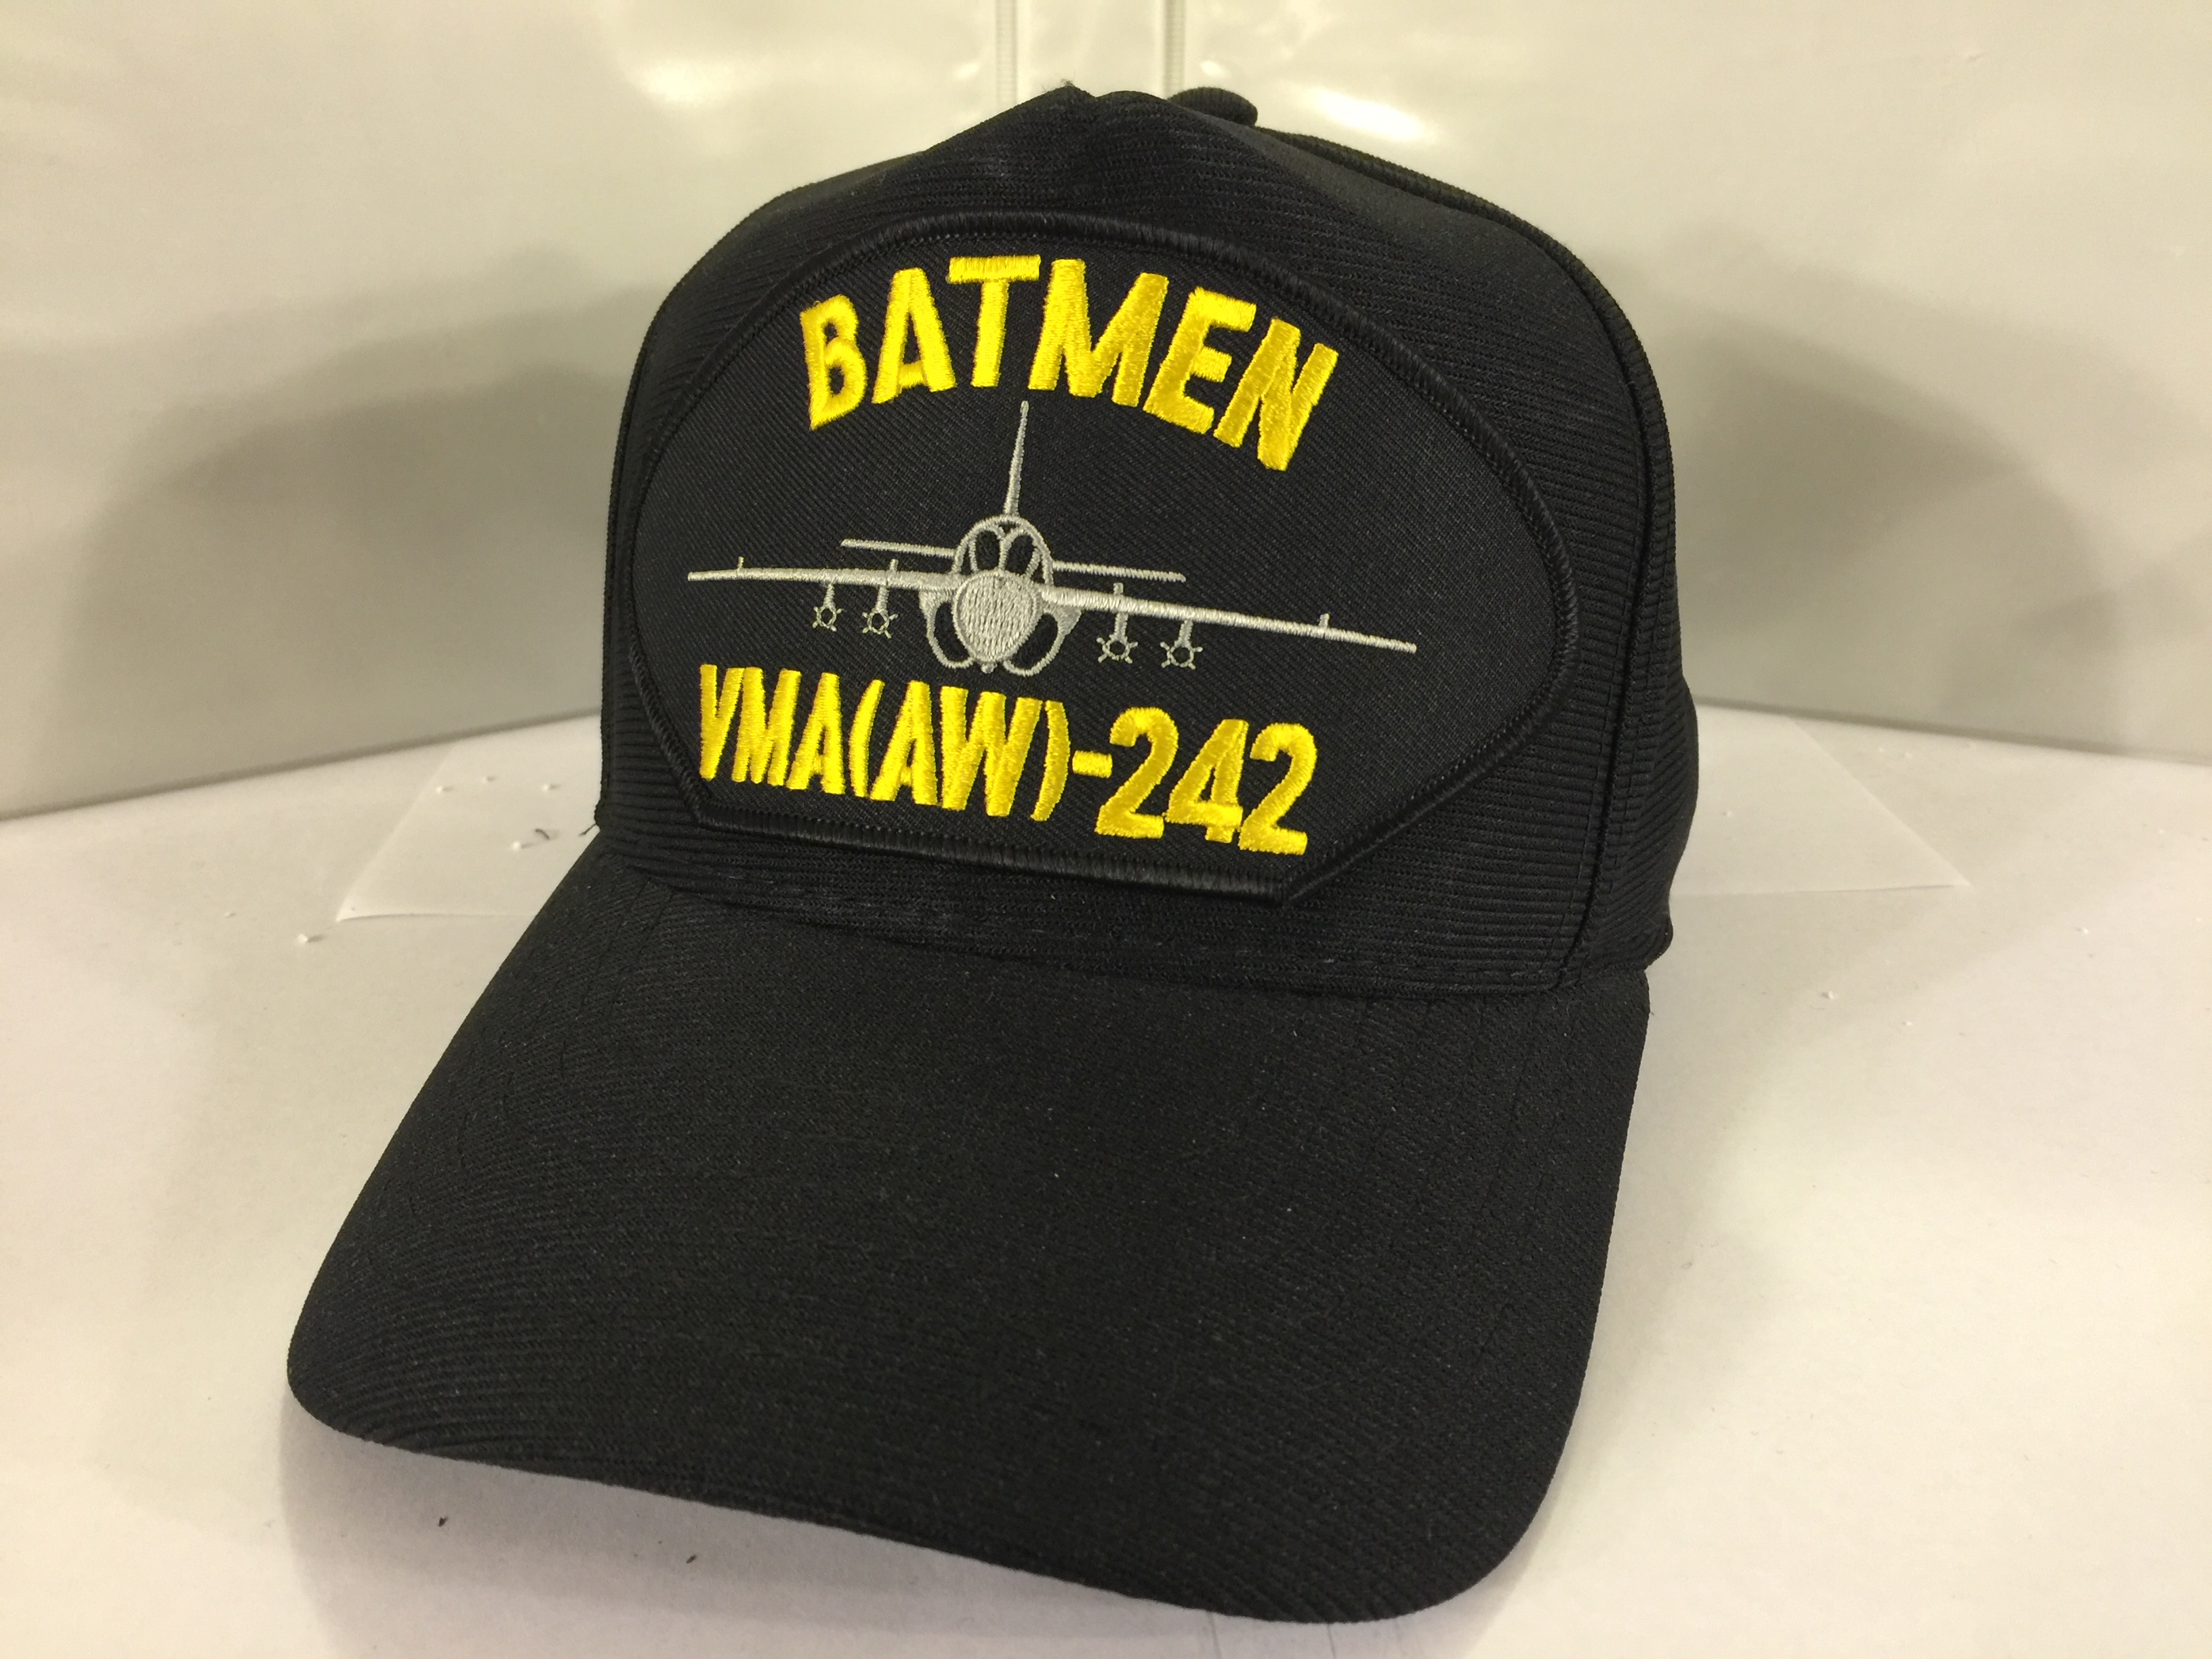 USMC VMA(AW)-242 BATMEN Ballcap (Black)